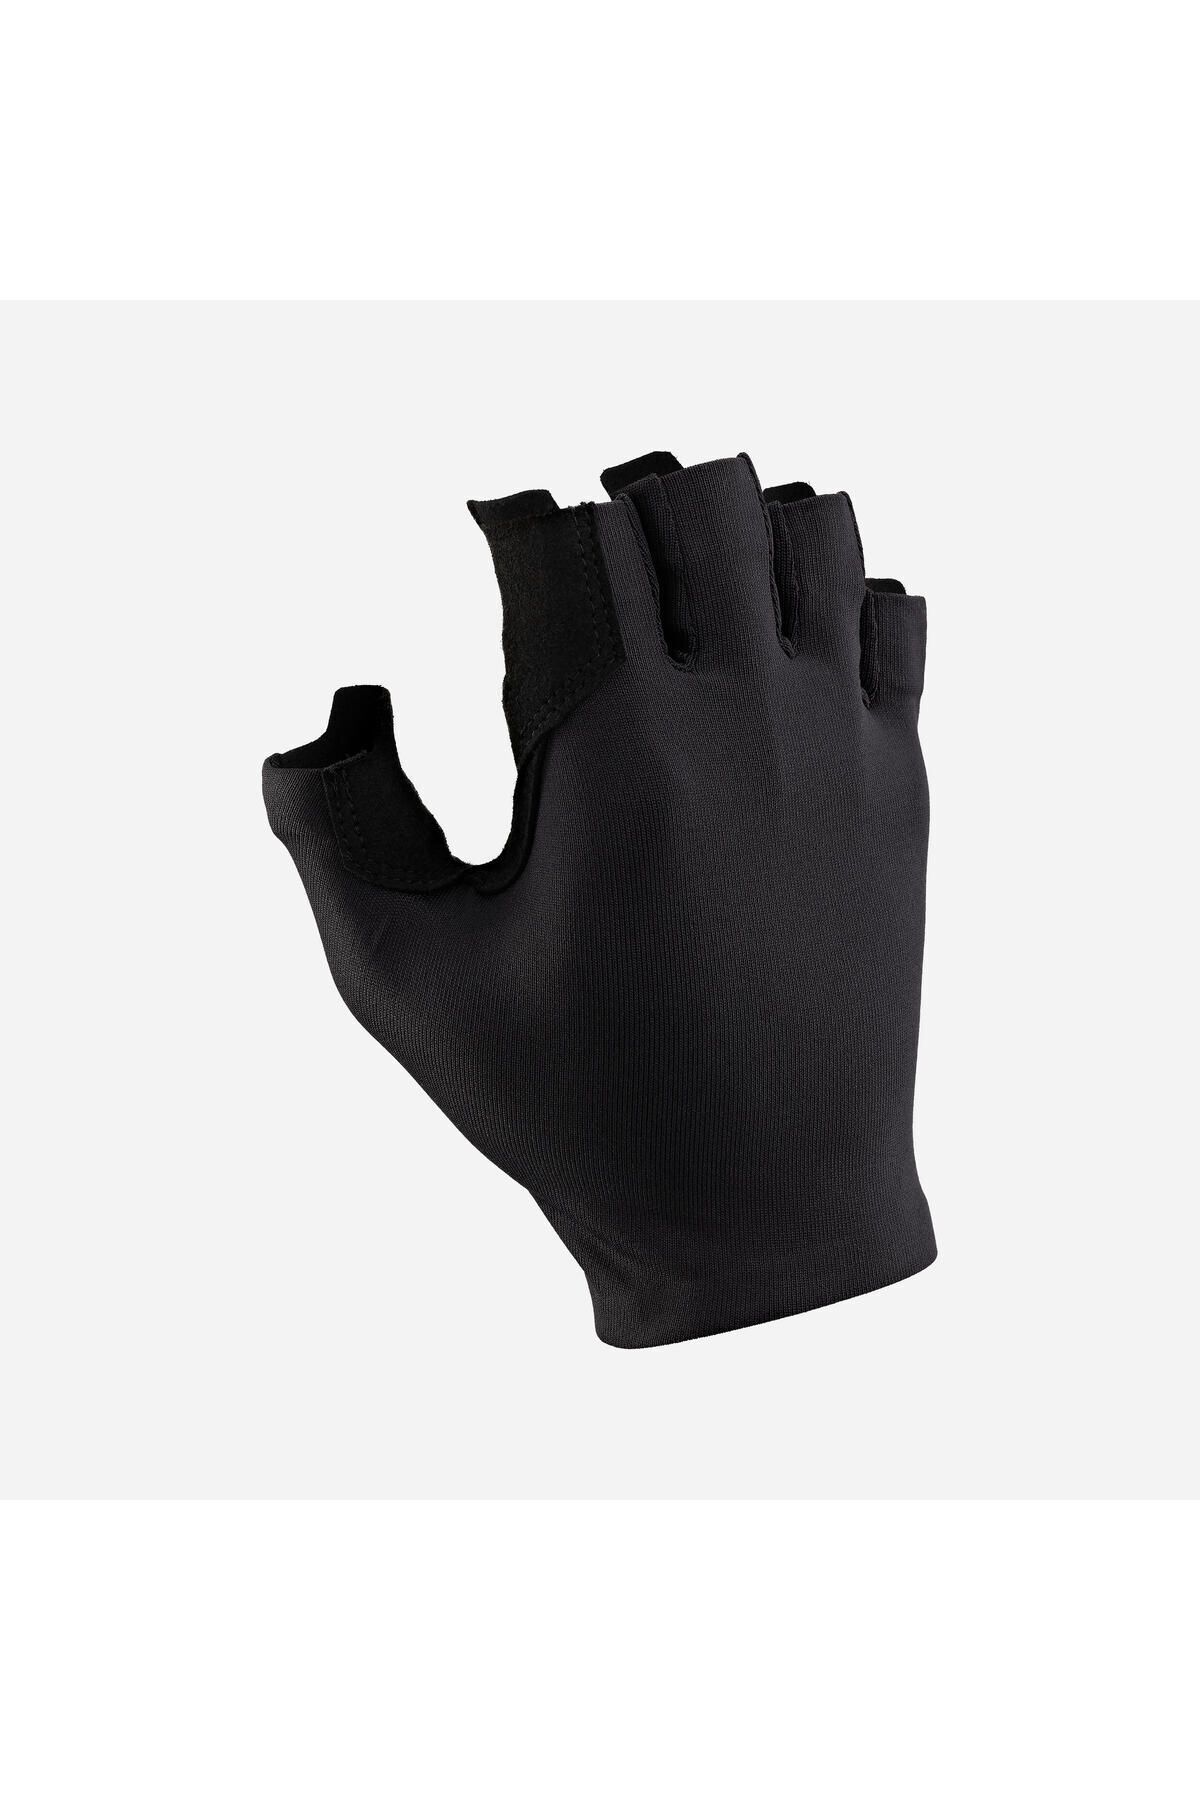 Decathlon Шоссейные перчатки для велоспорта — черные — Road 100 330572